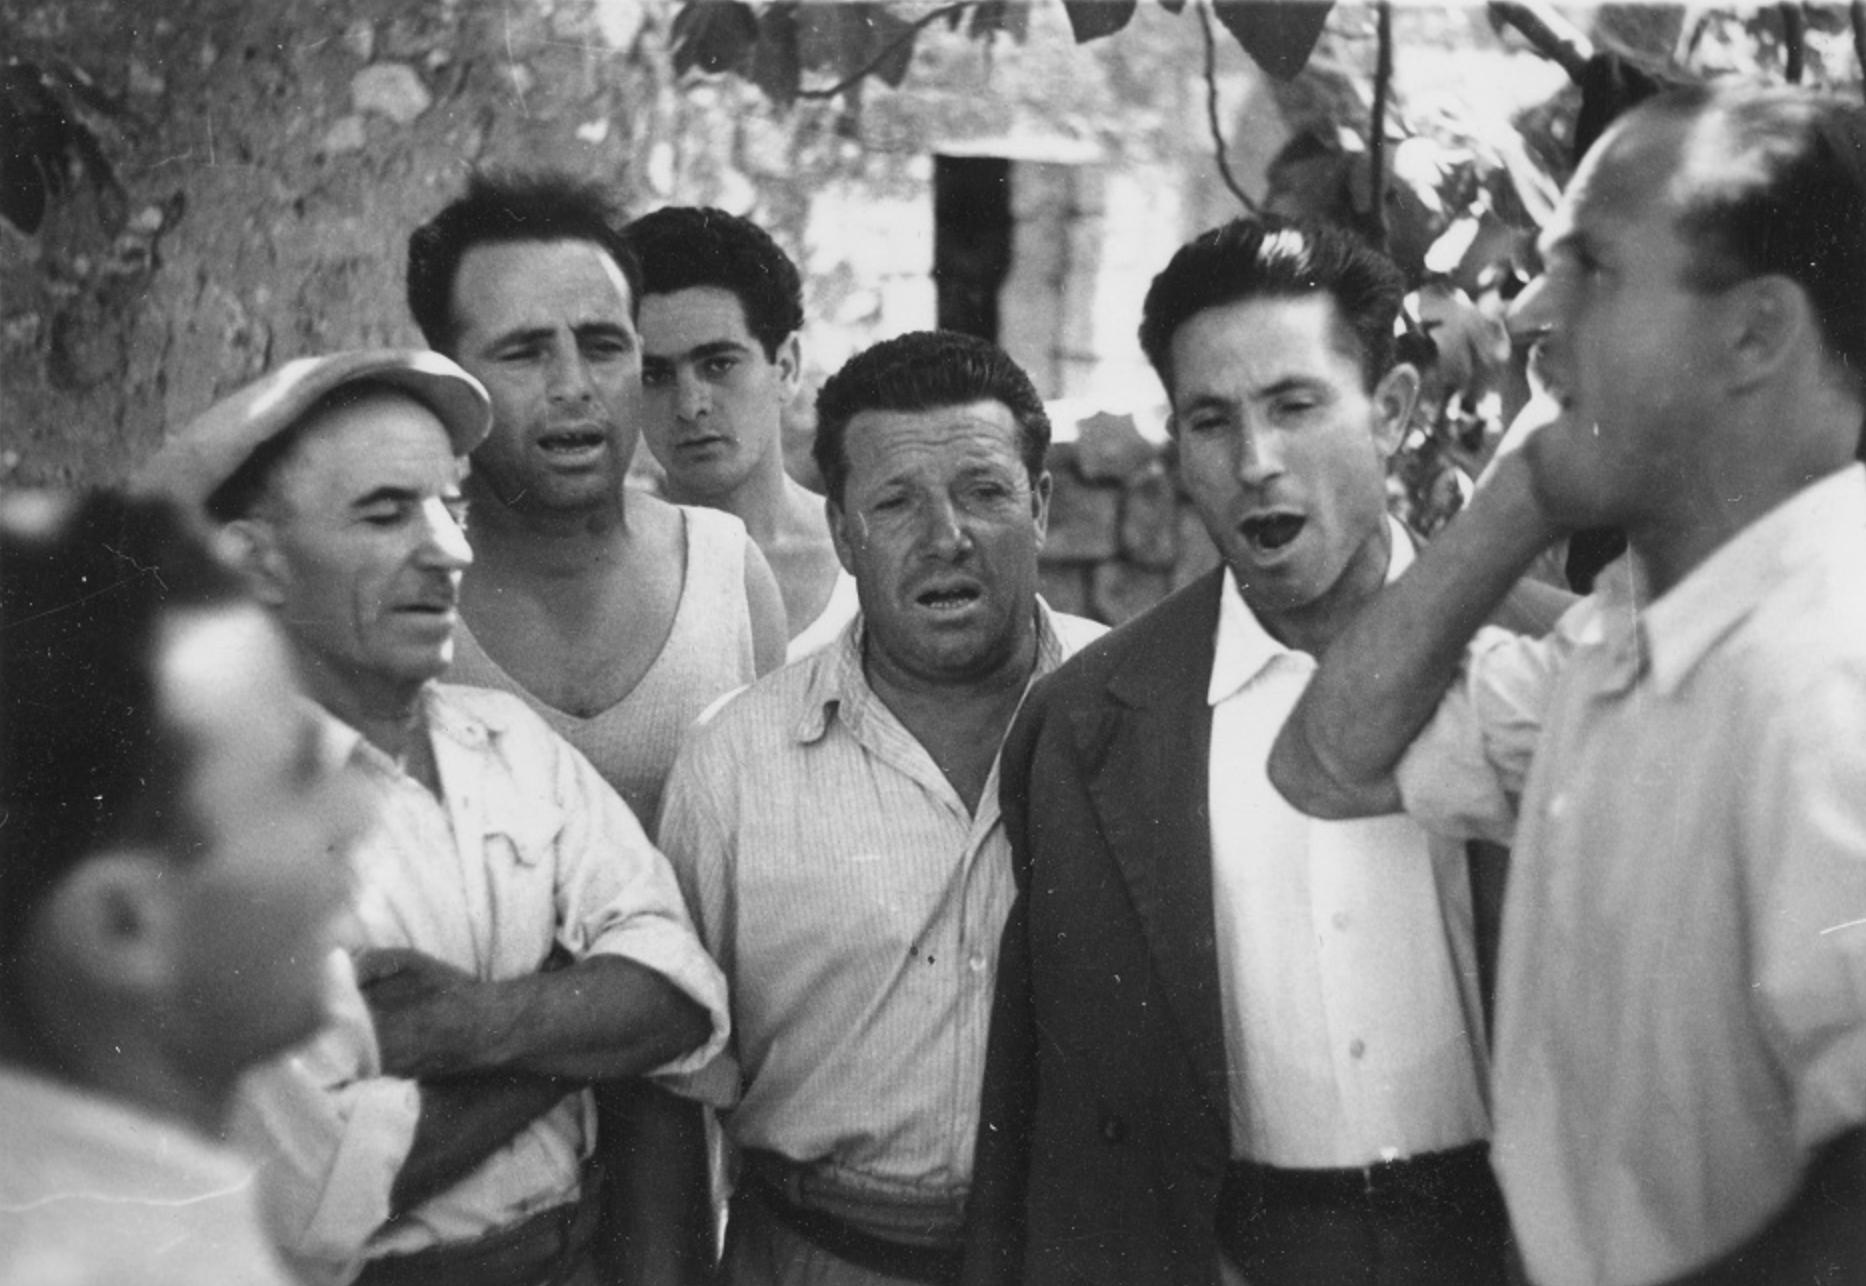 Musica e tradizione orale nel Salento. Le registrazioni di Alan Lomax e Diego Carpitella (agosto 1954)